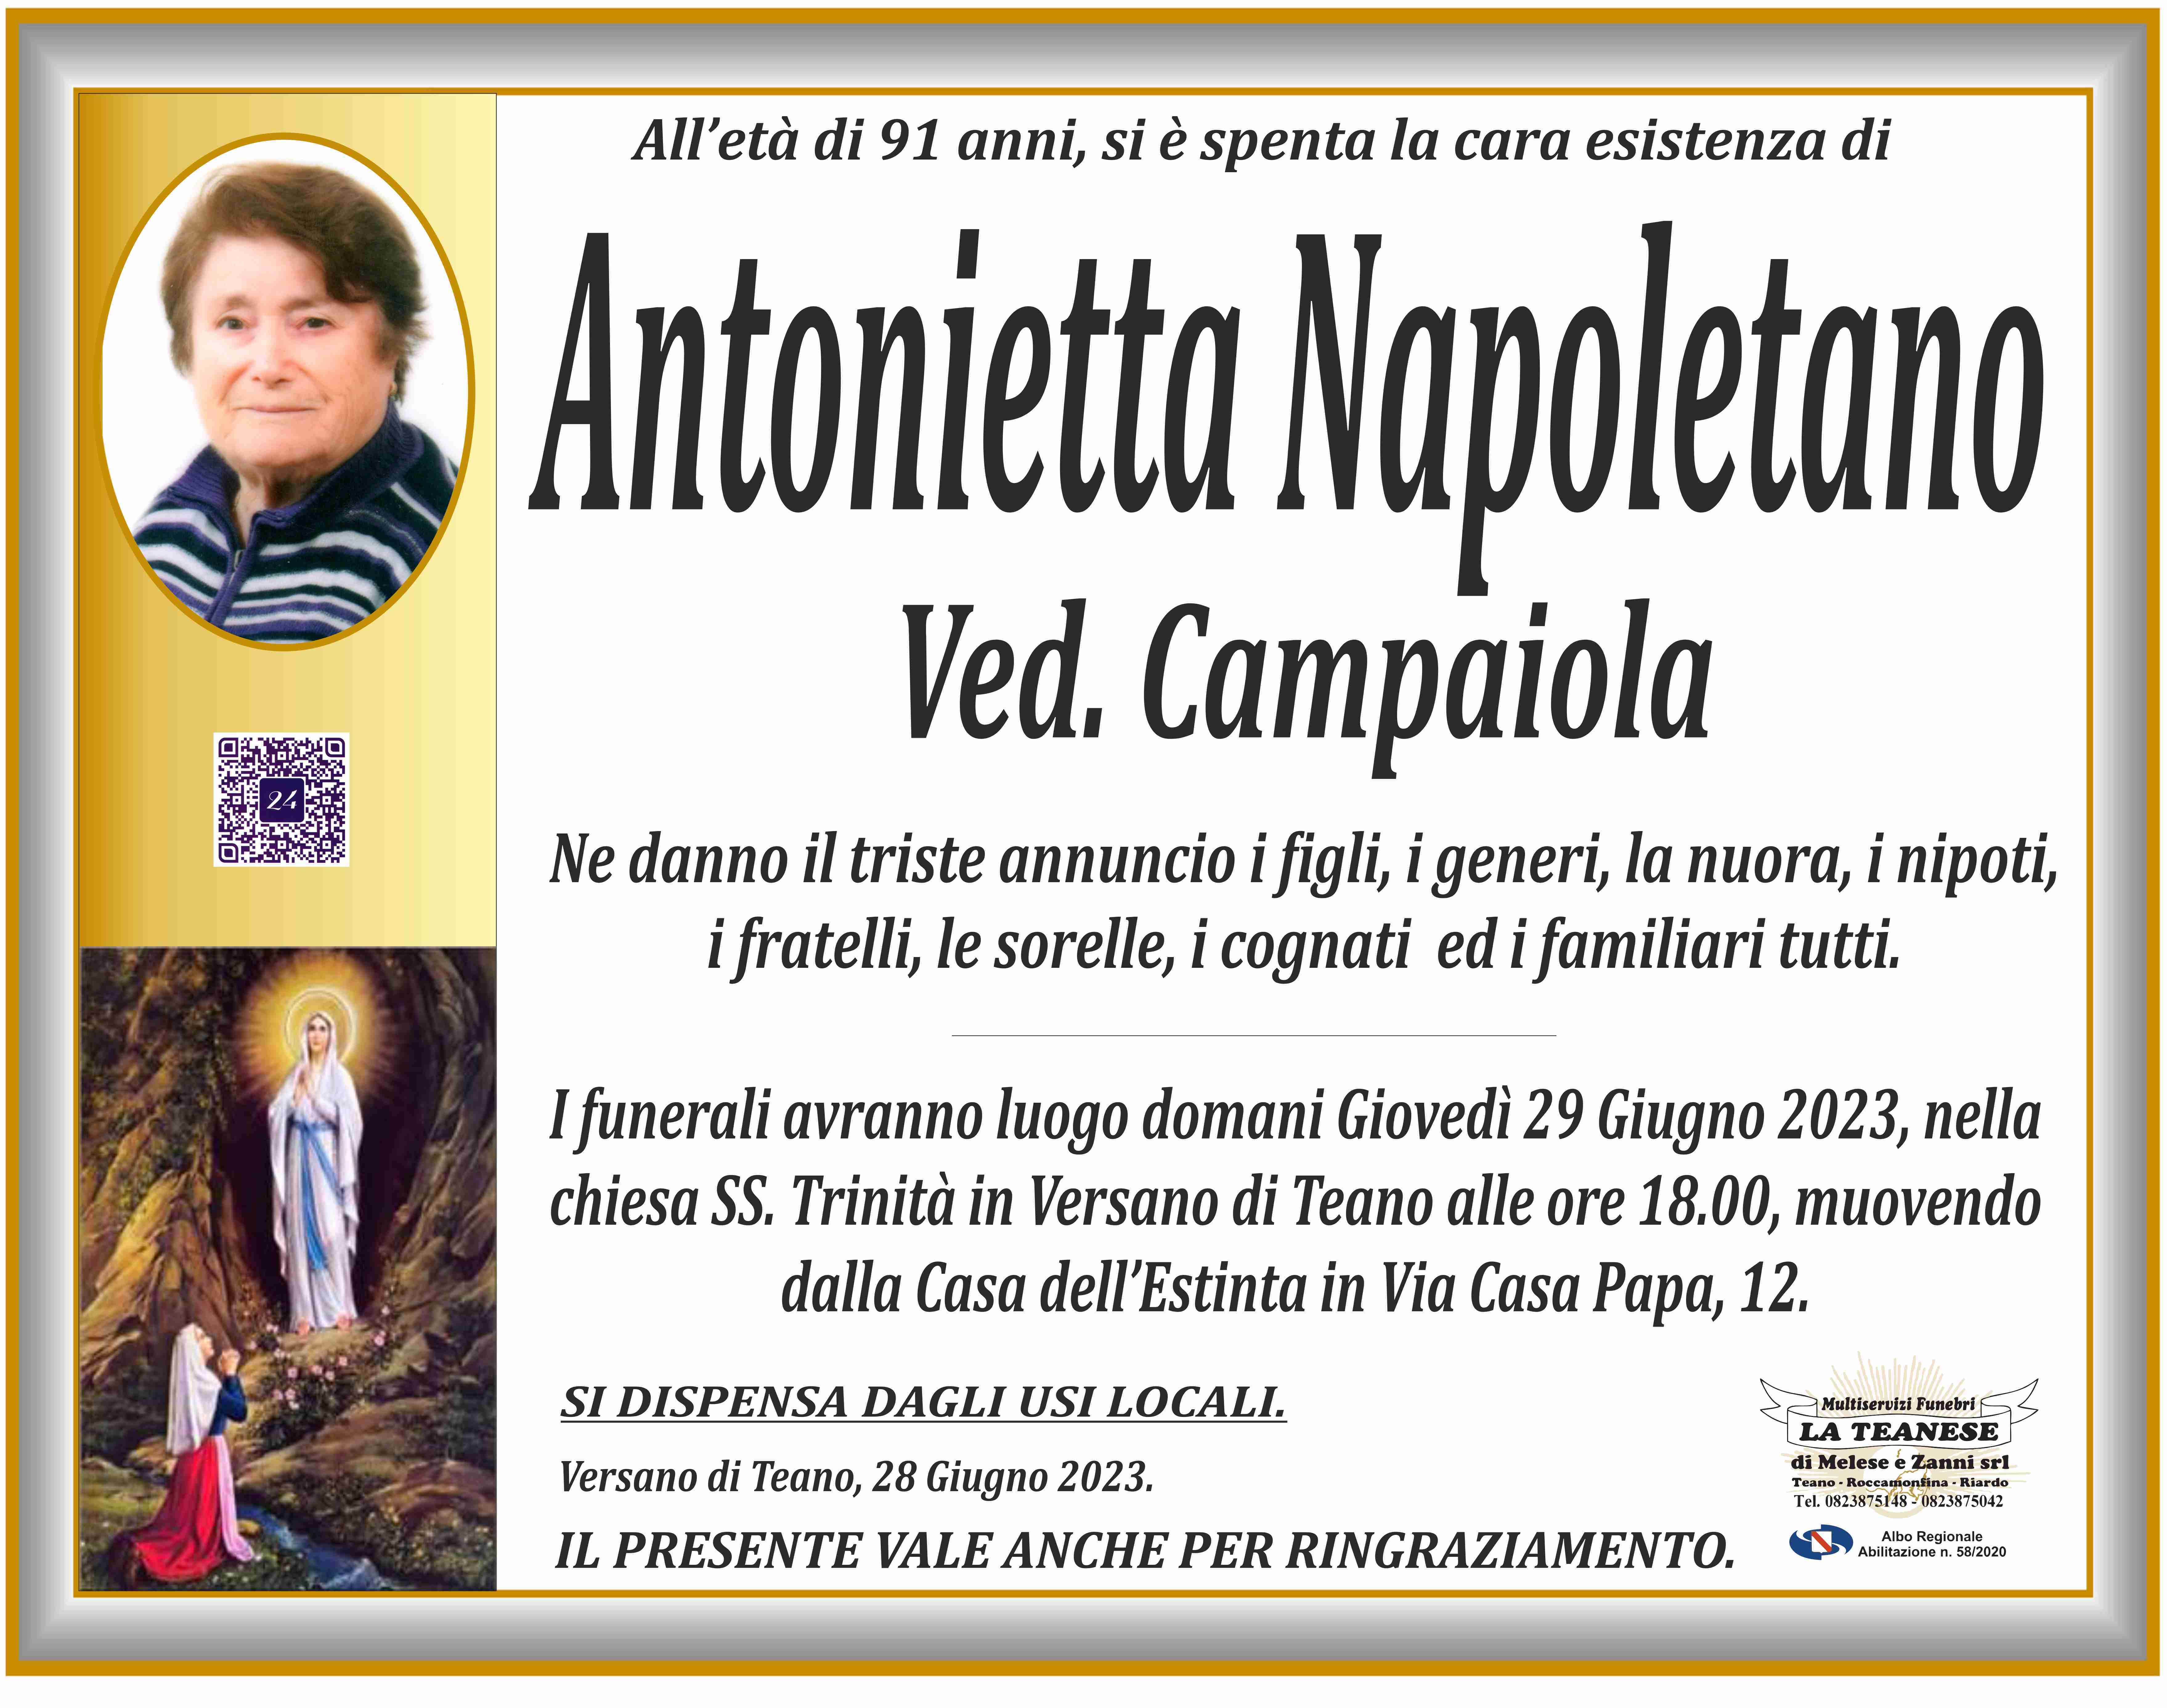 Antonietta Napoletano